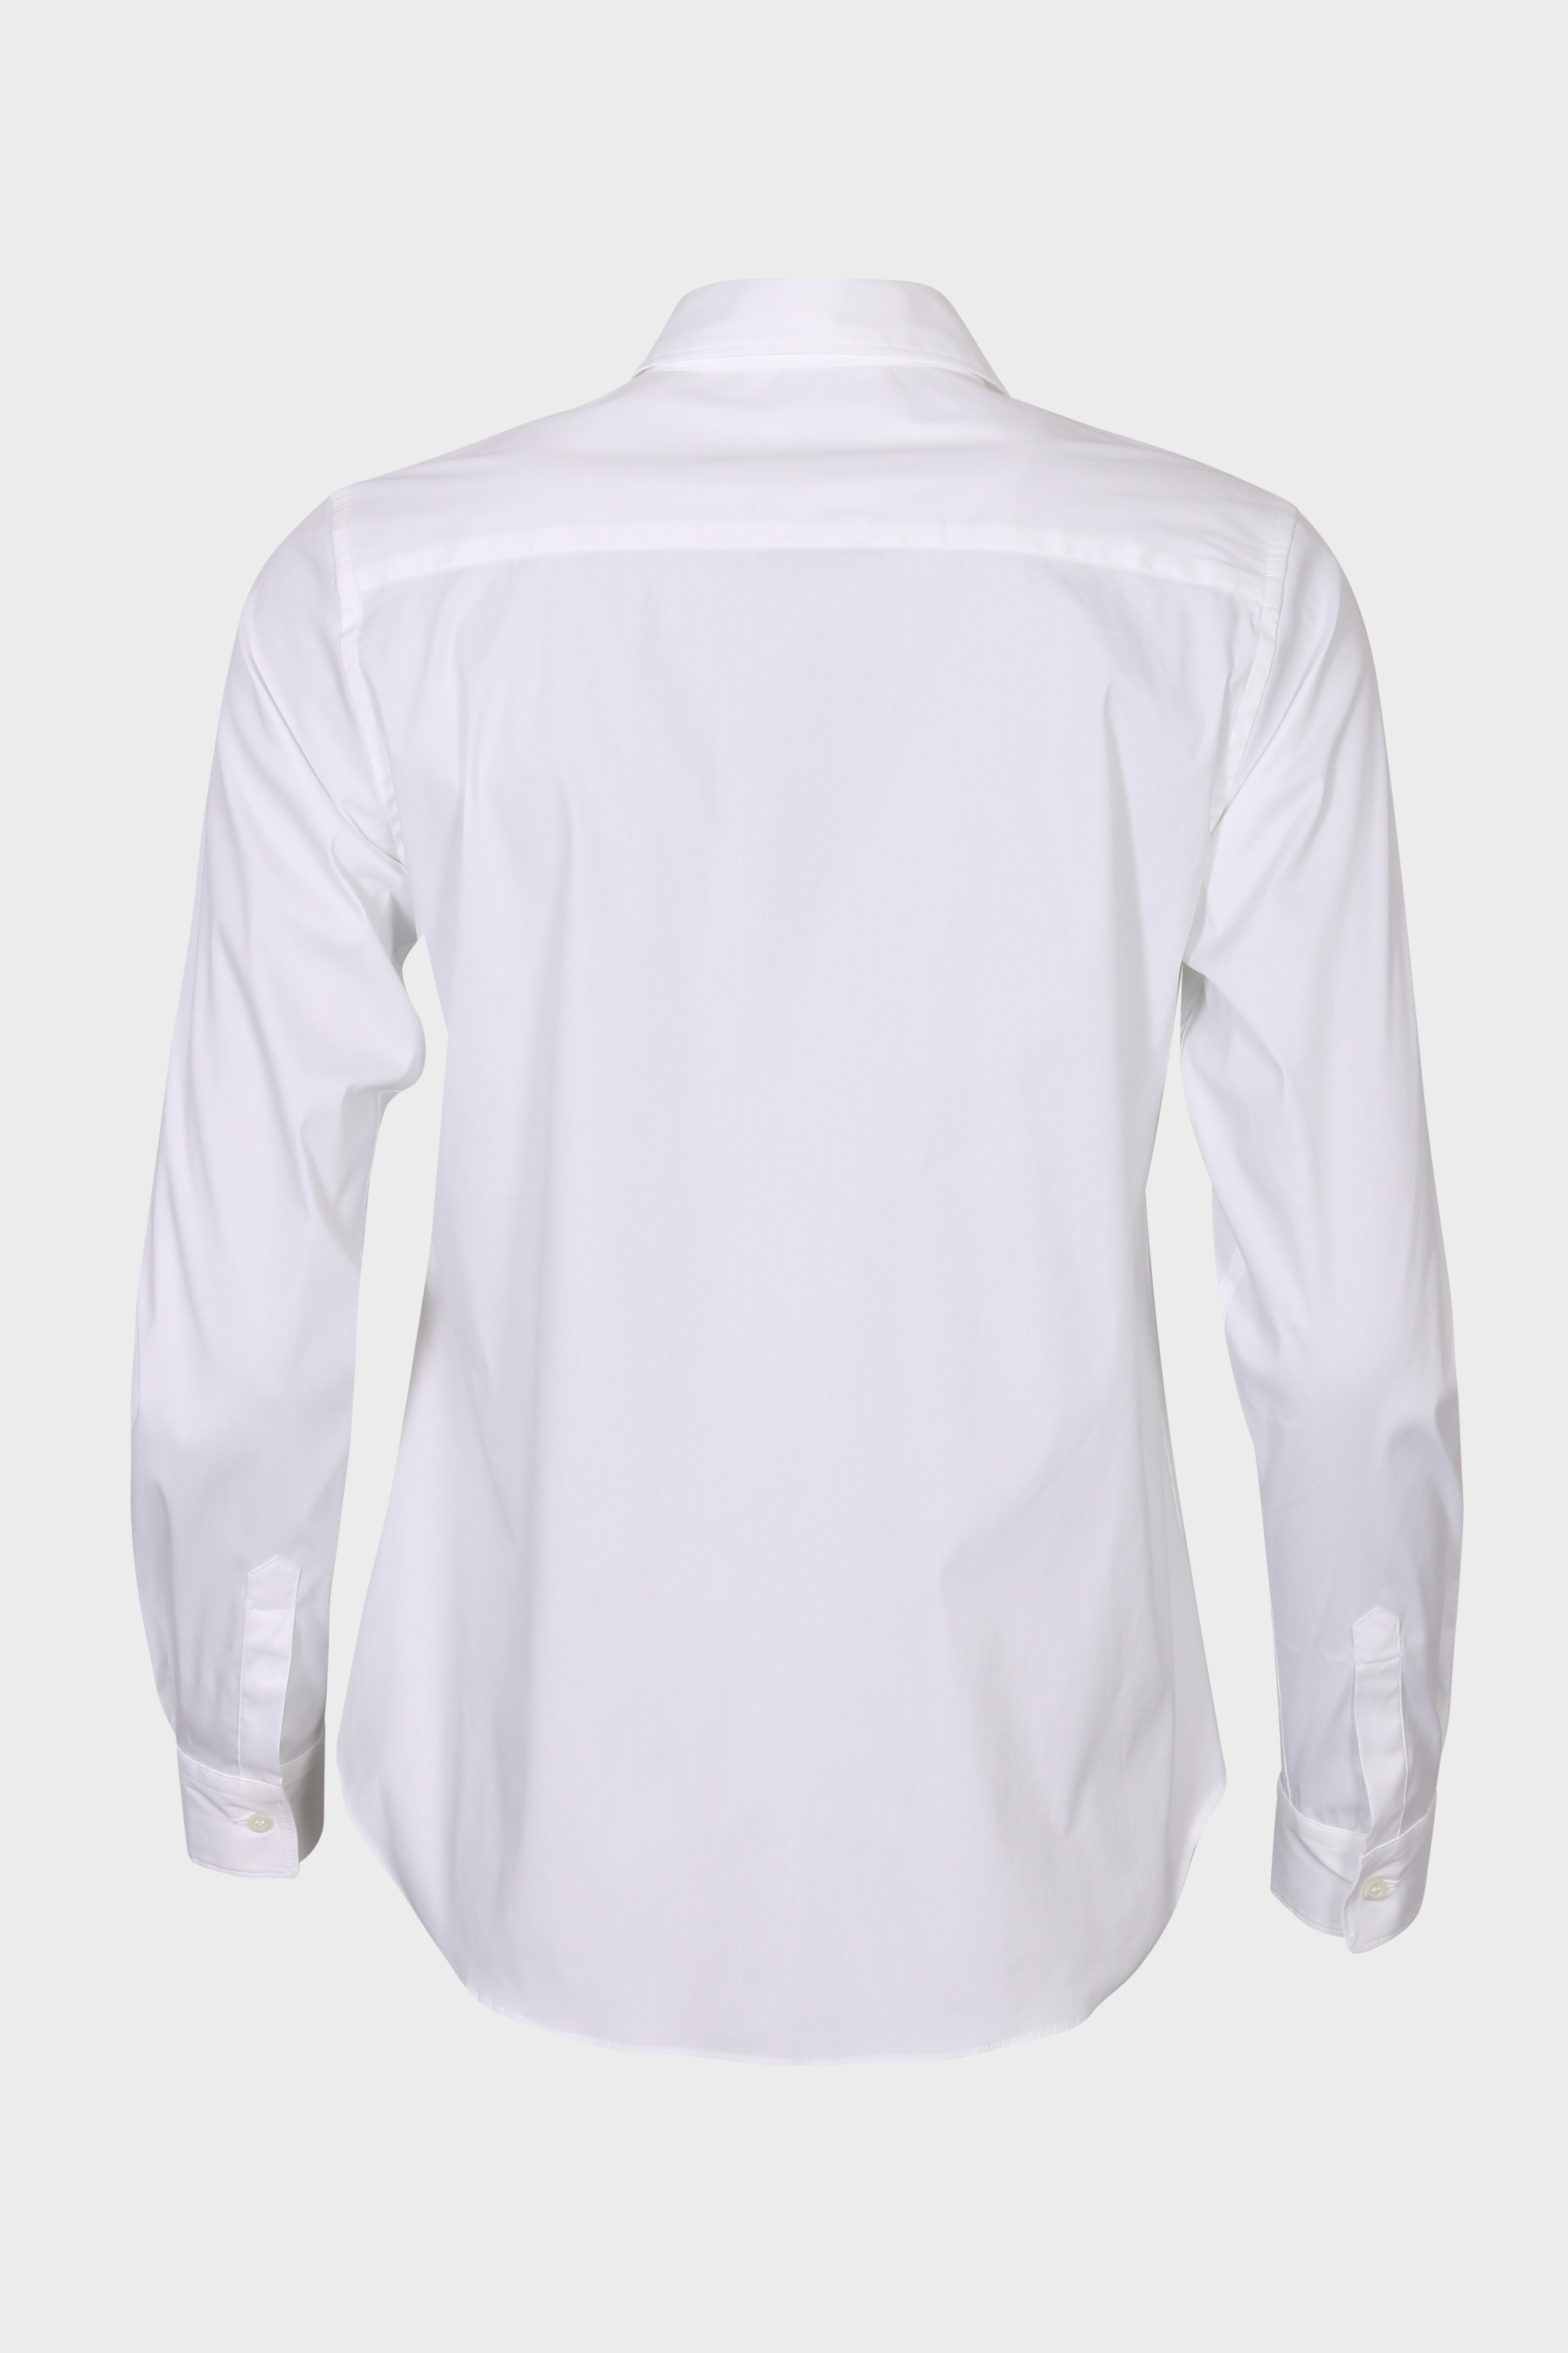 ASPESI White Shirt IT40 / DE34